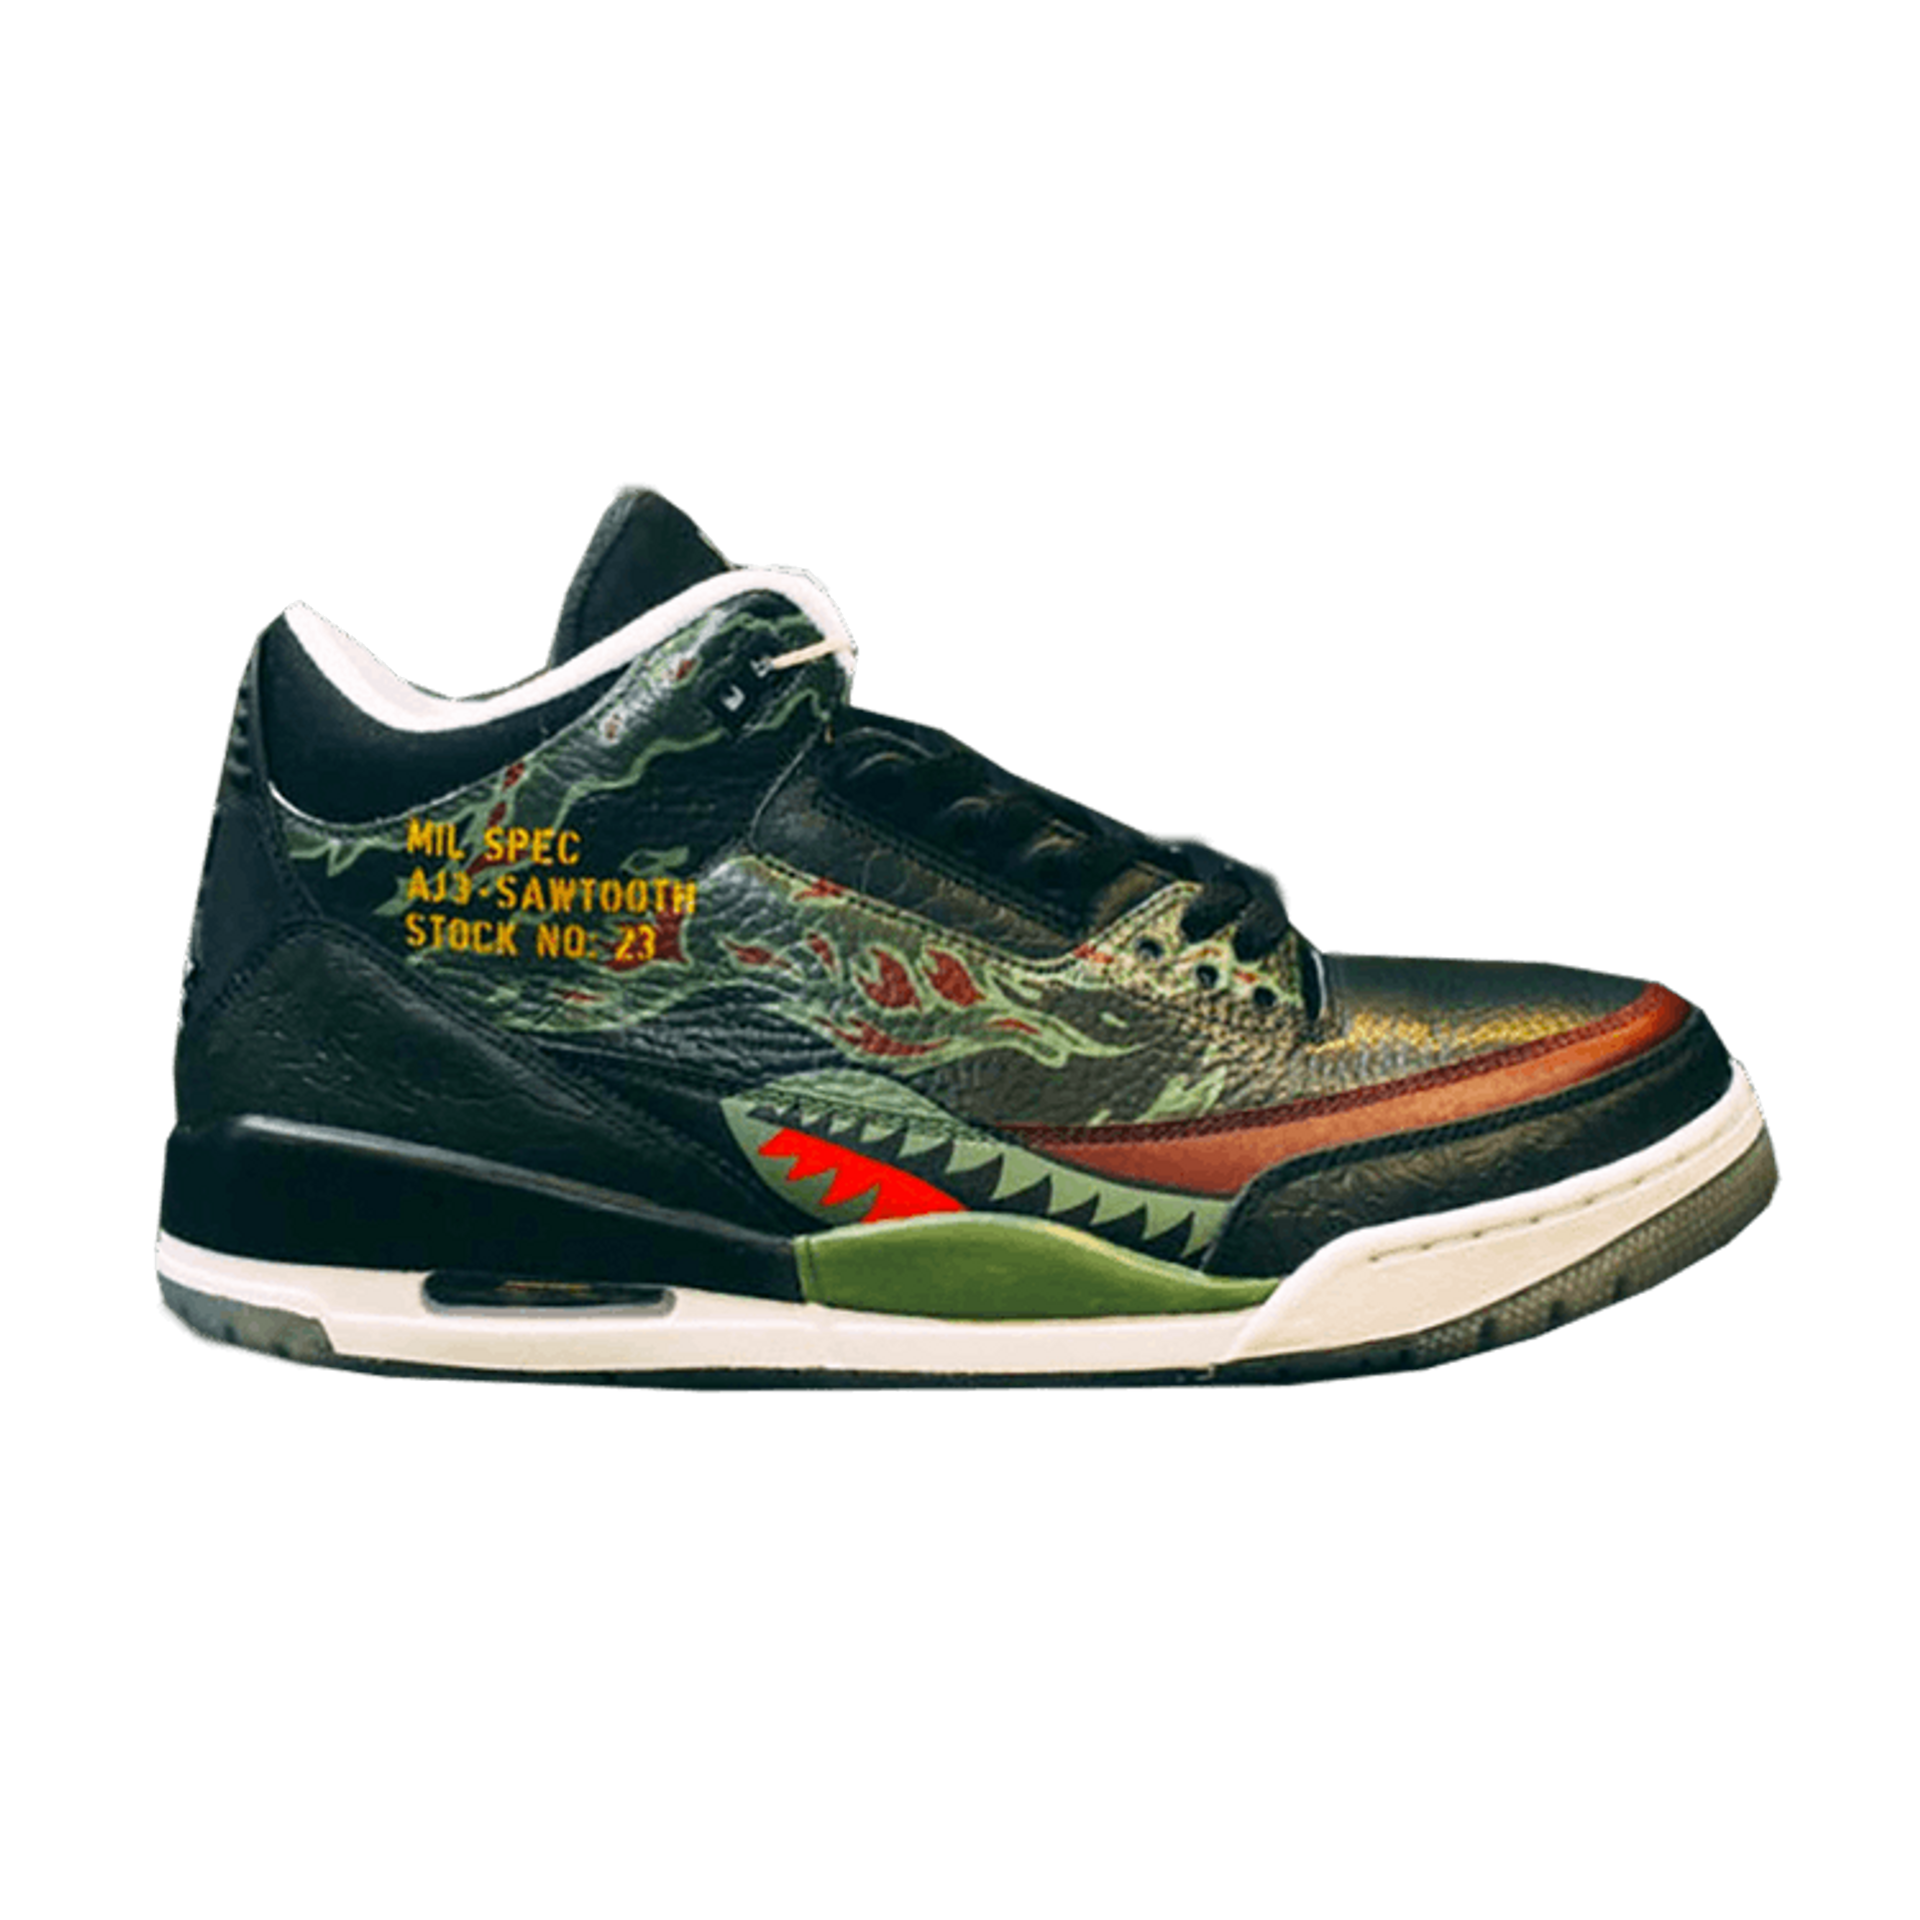 SBTG x Air Jordan 3 'Sawtooth'